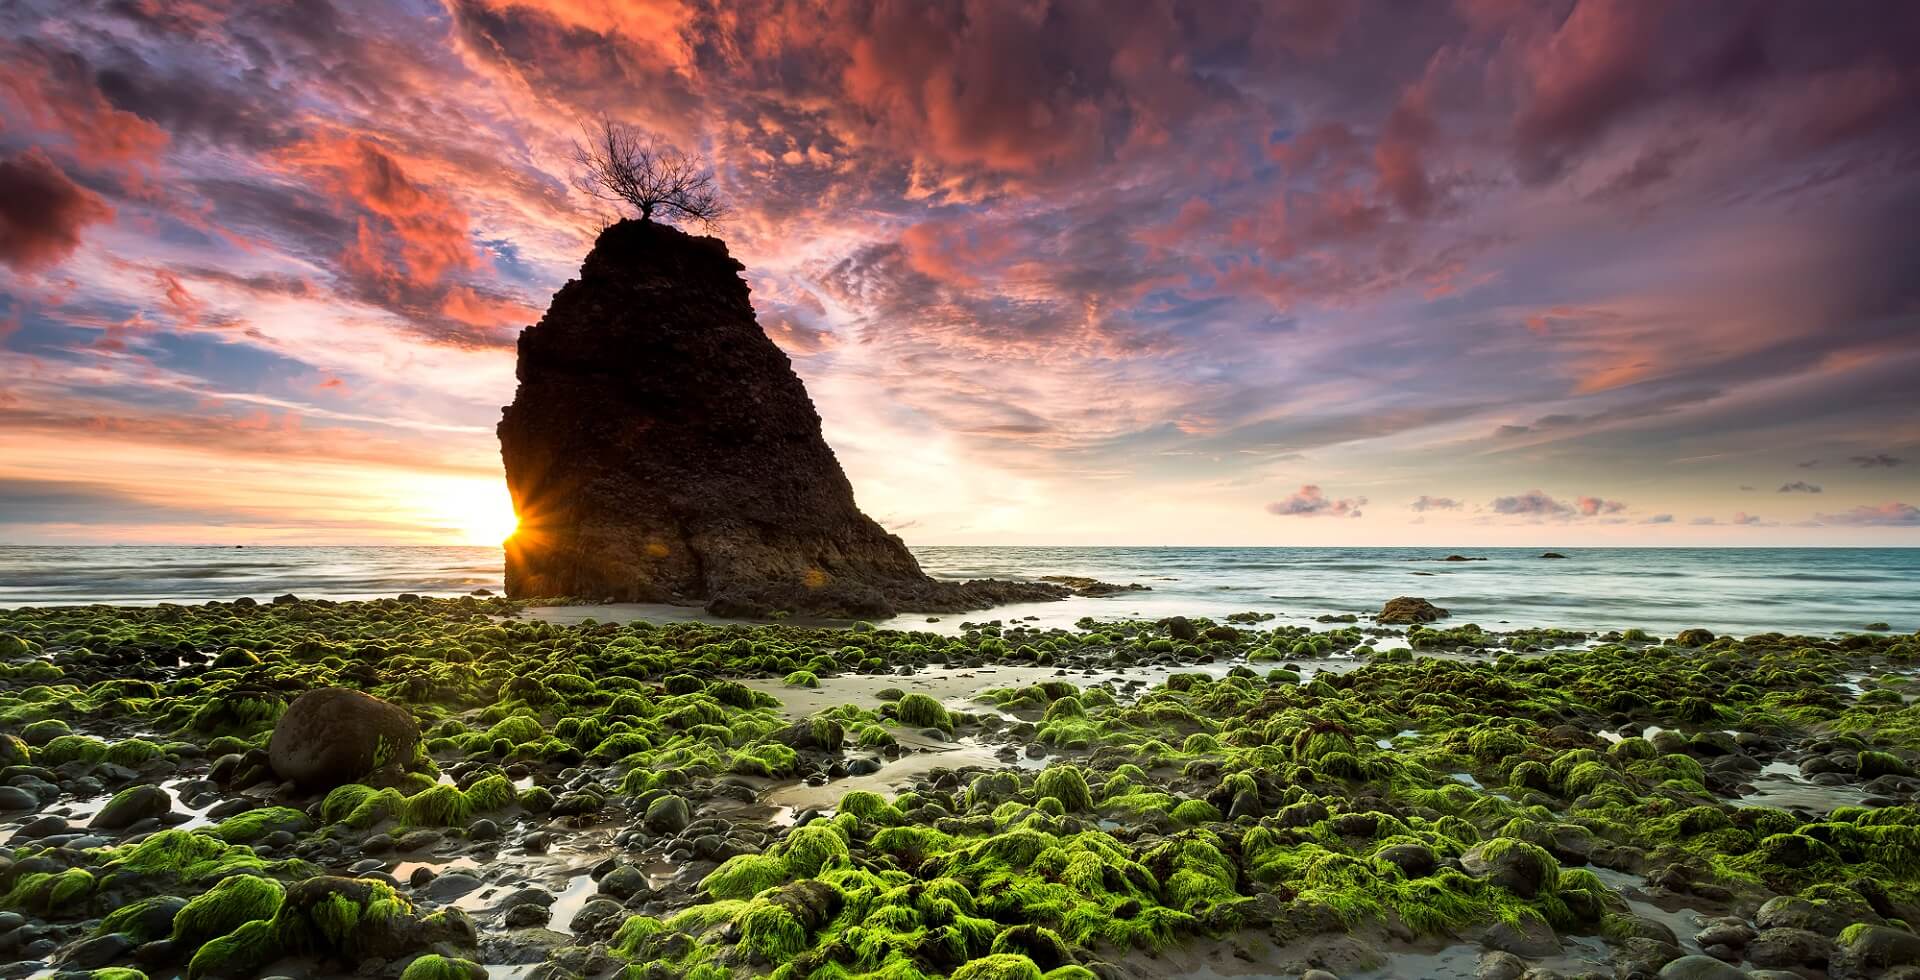 Batu Luang Beach, Kuala Penyu, Sabah, Malaysia. With amazing natural mossy